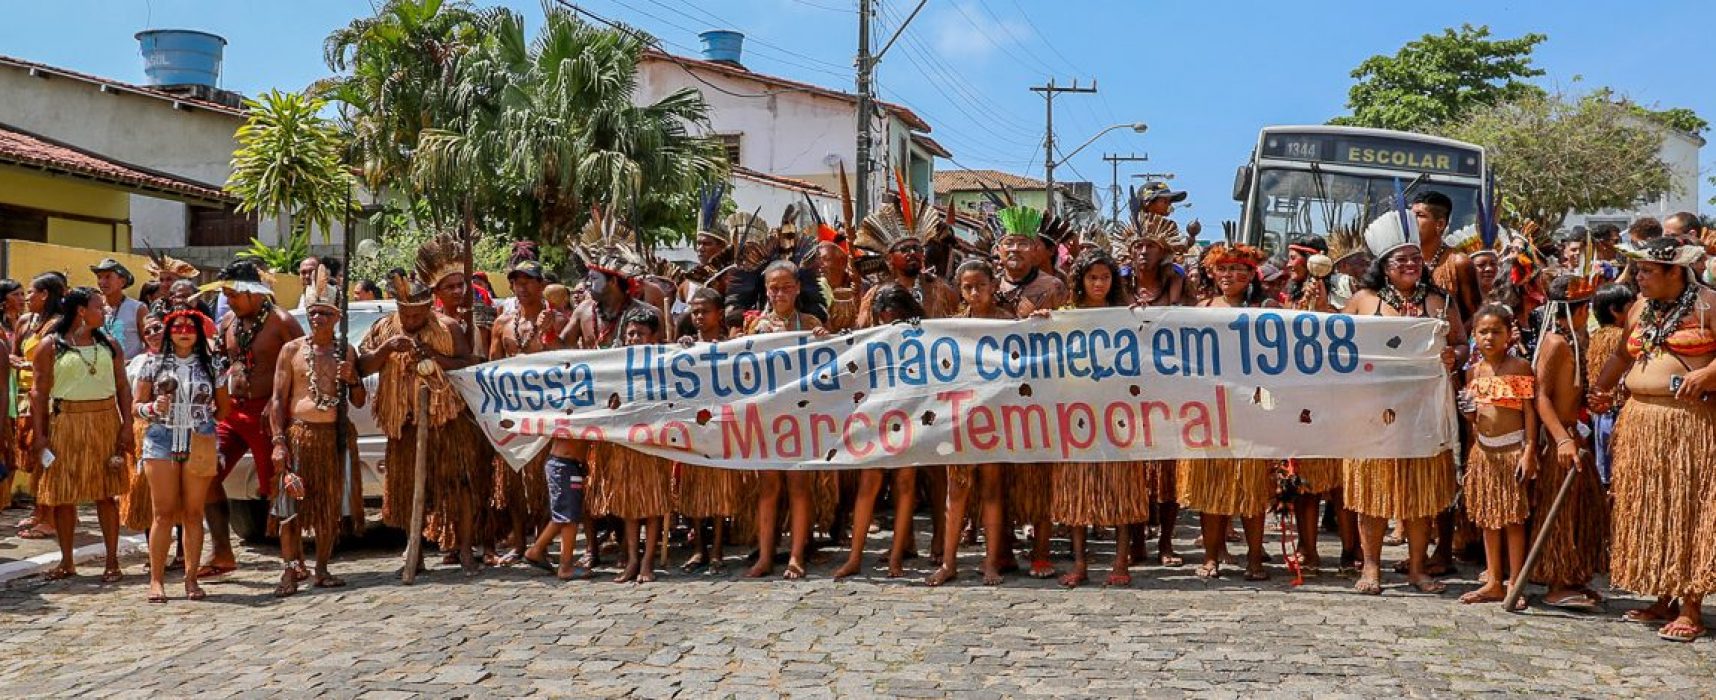 Povos indígenas do Sul da Bahia cobram a demarcação de terras em caminhada